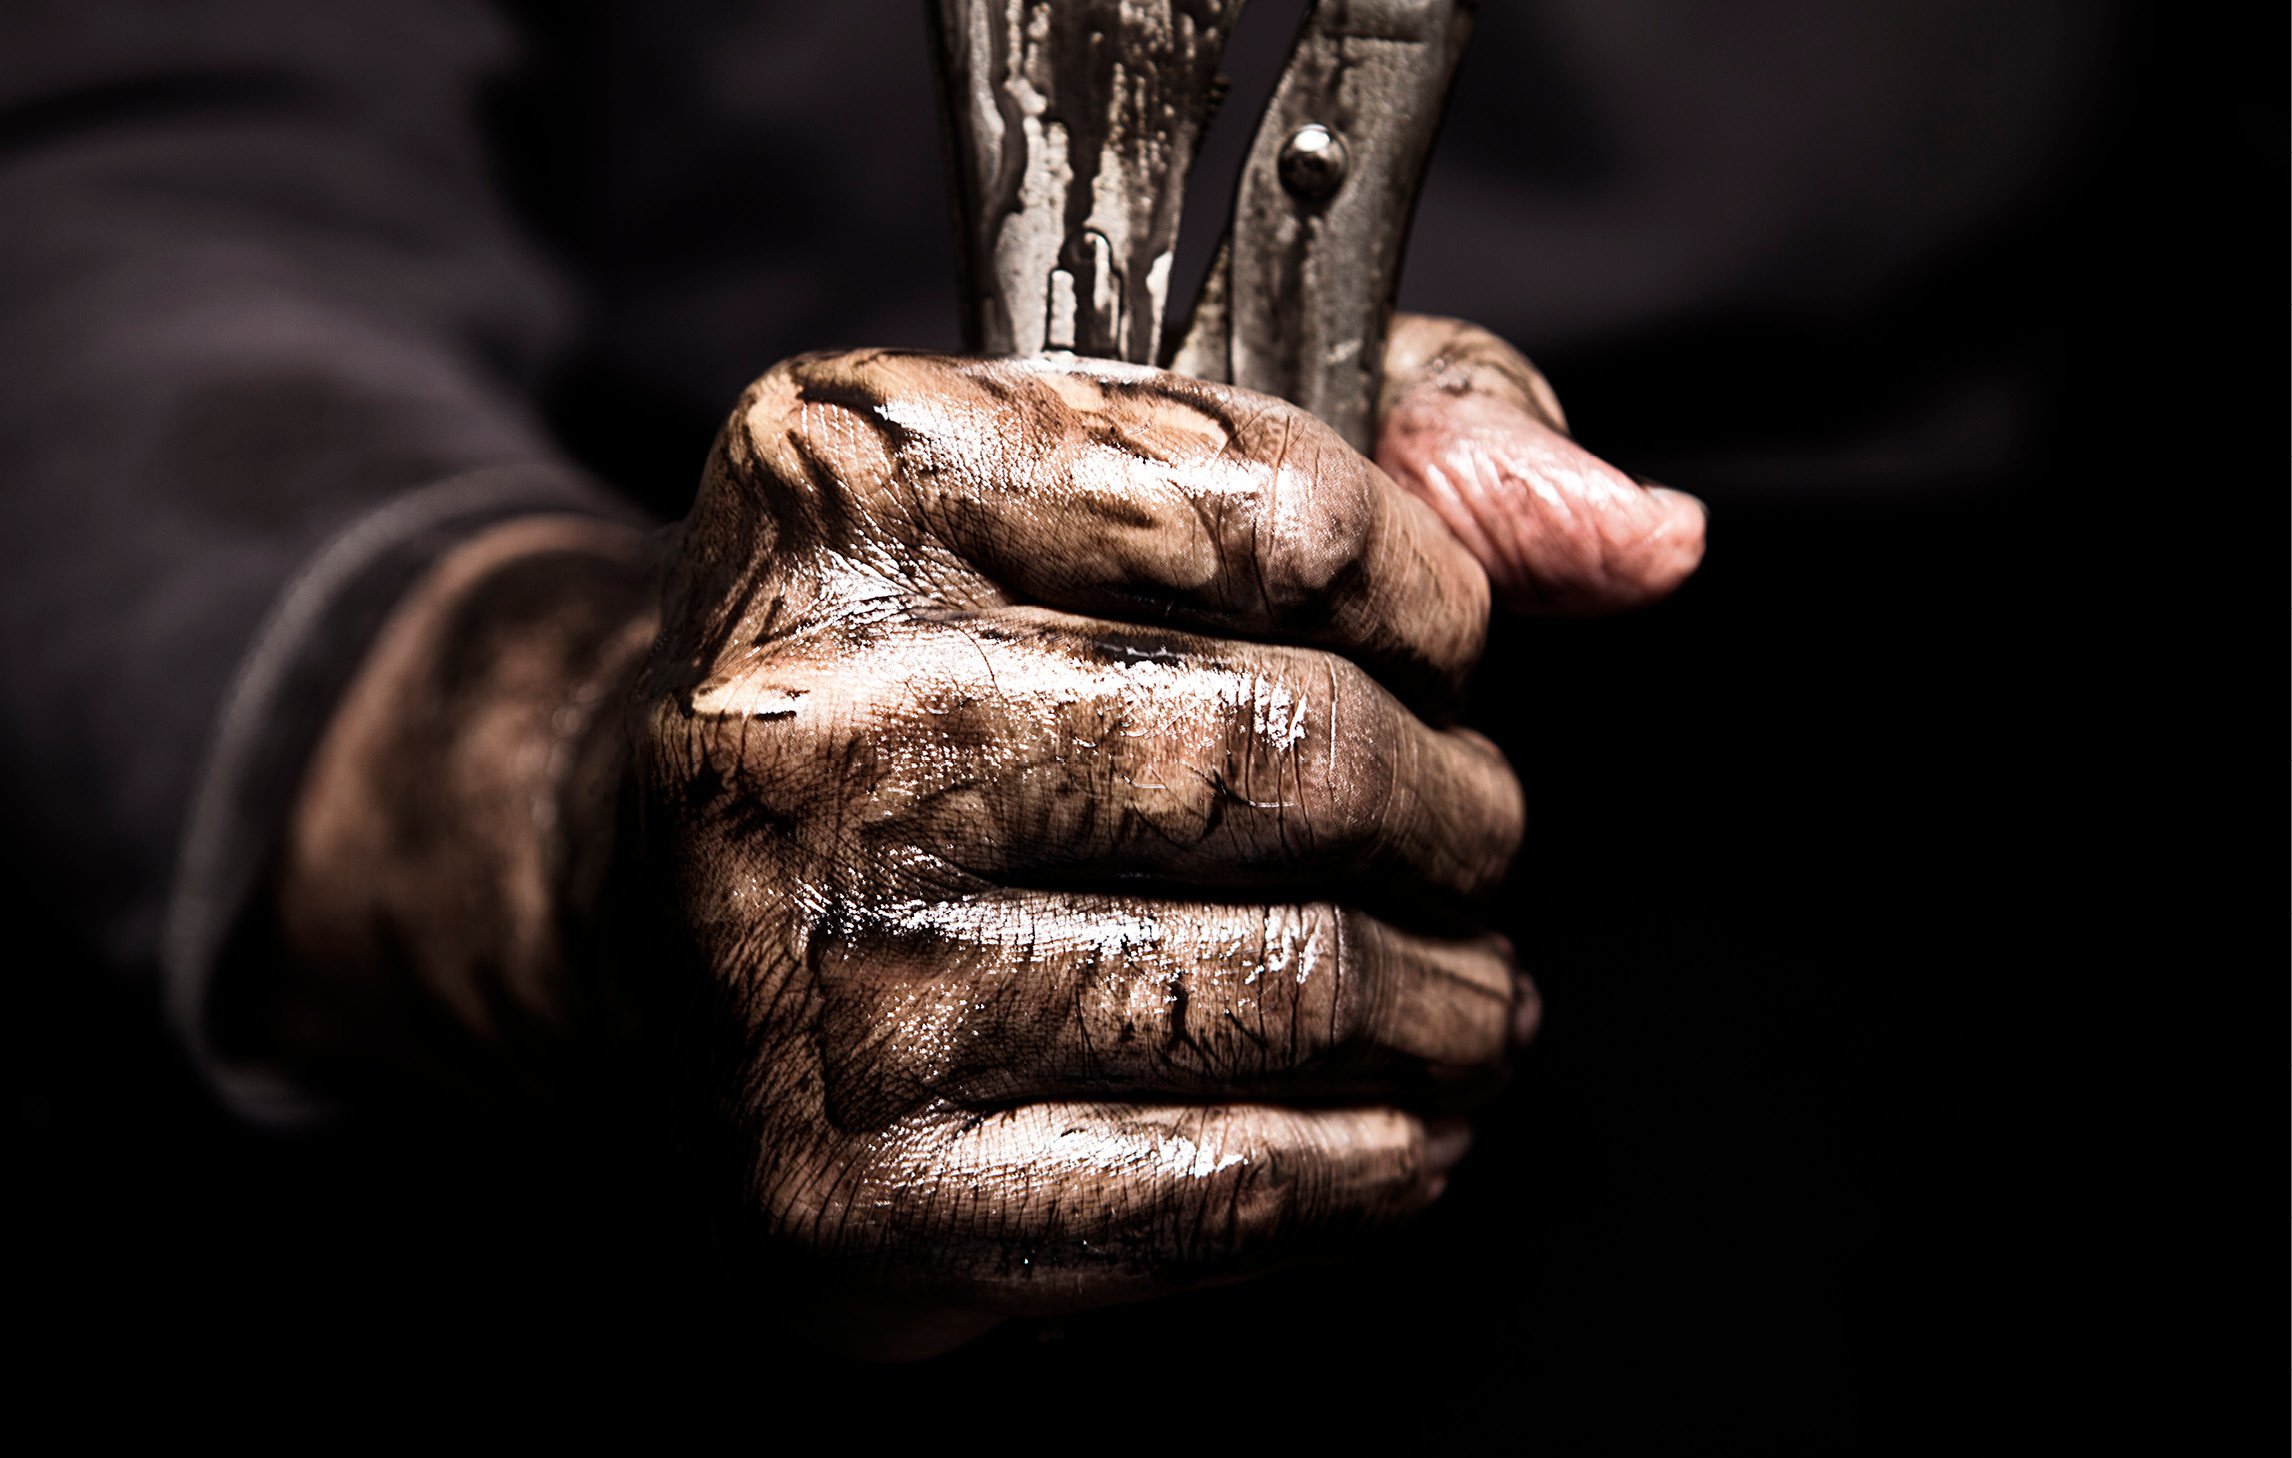 Nahaufnahme einer ölverschmierten Hand, die ein metallenes Werkzeug hält.